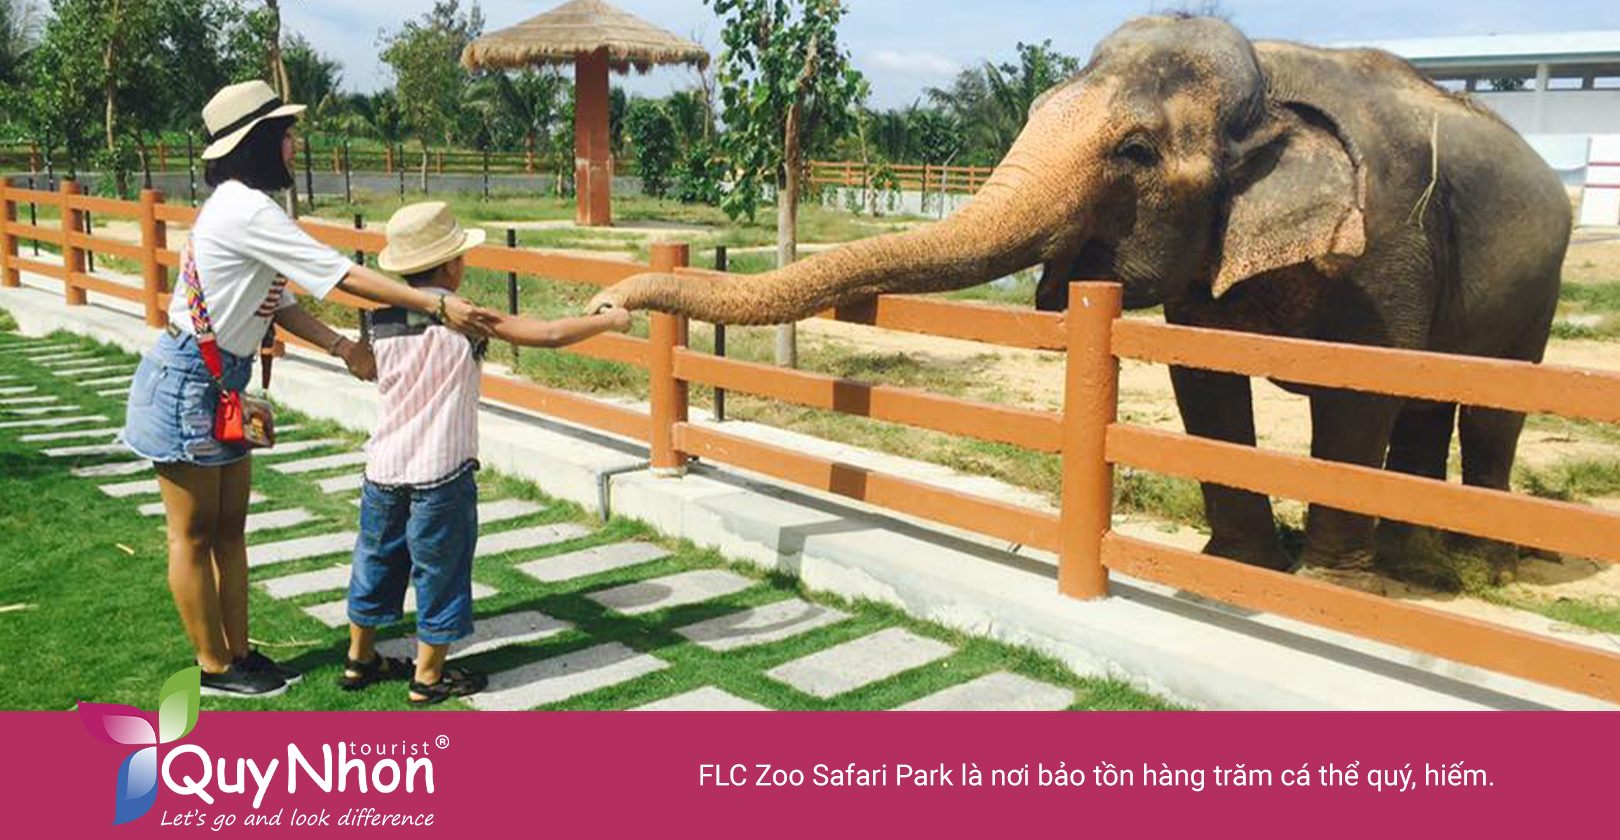 FLC Zoo Safari Park - điểm tham quan mà các bố mẹ nên đưa con đến khám phá.